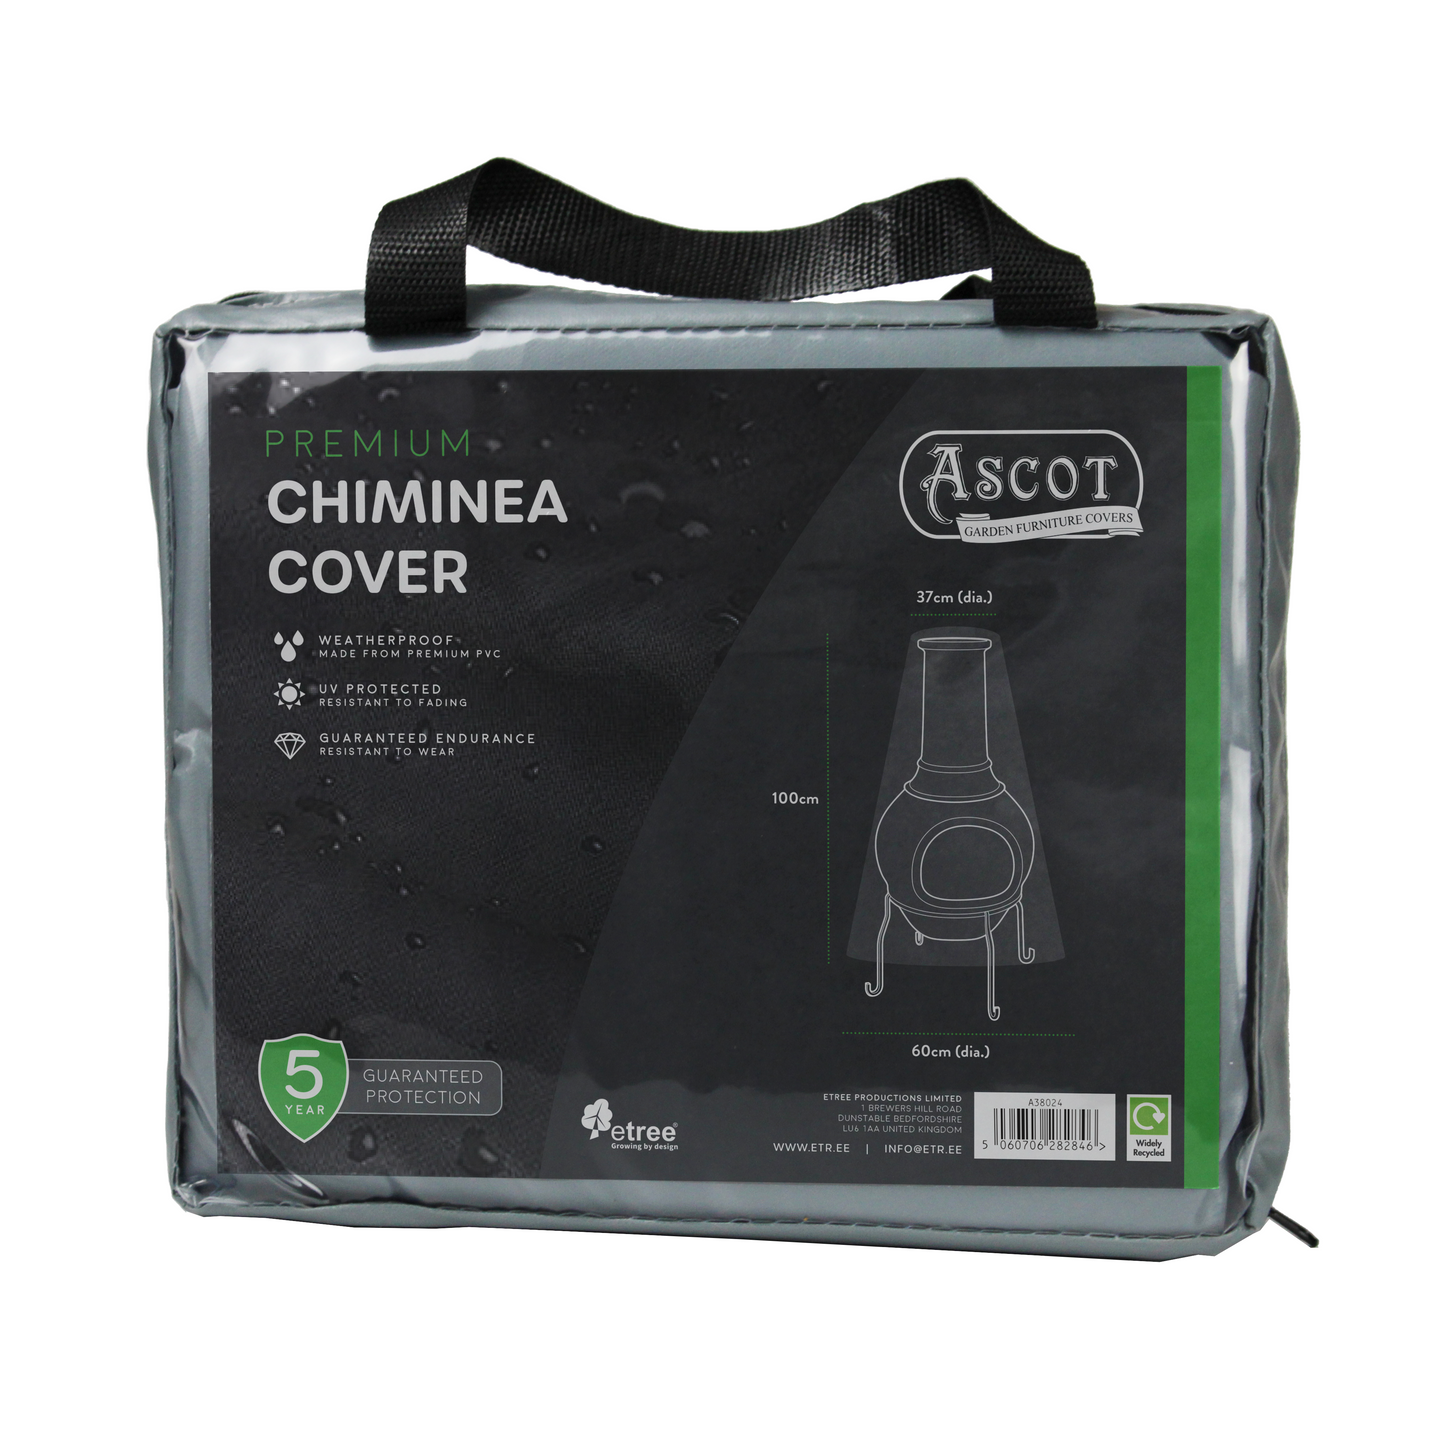 Premium Chiminea Cover - 37/60 (Dia.) X 100 (H) cm